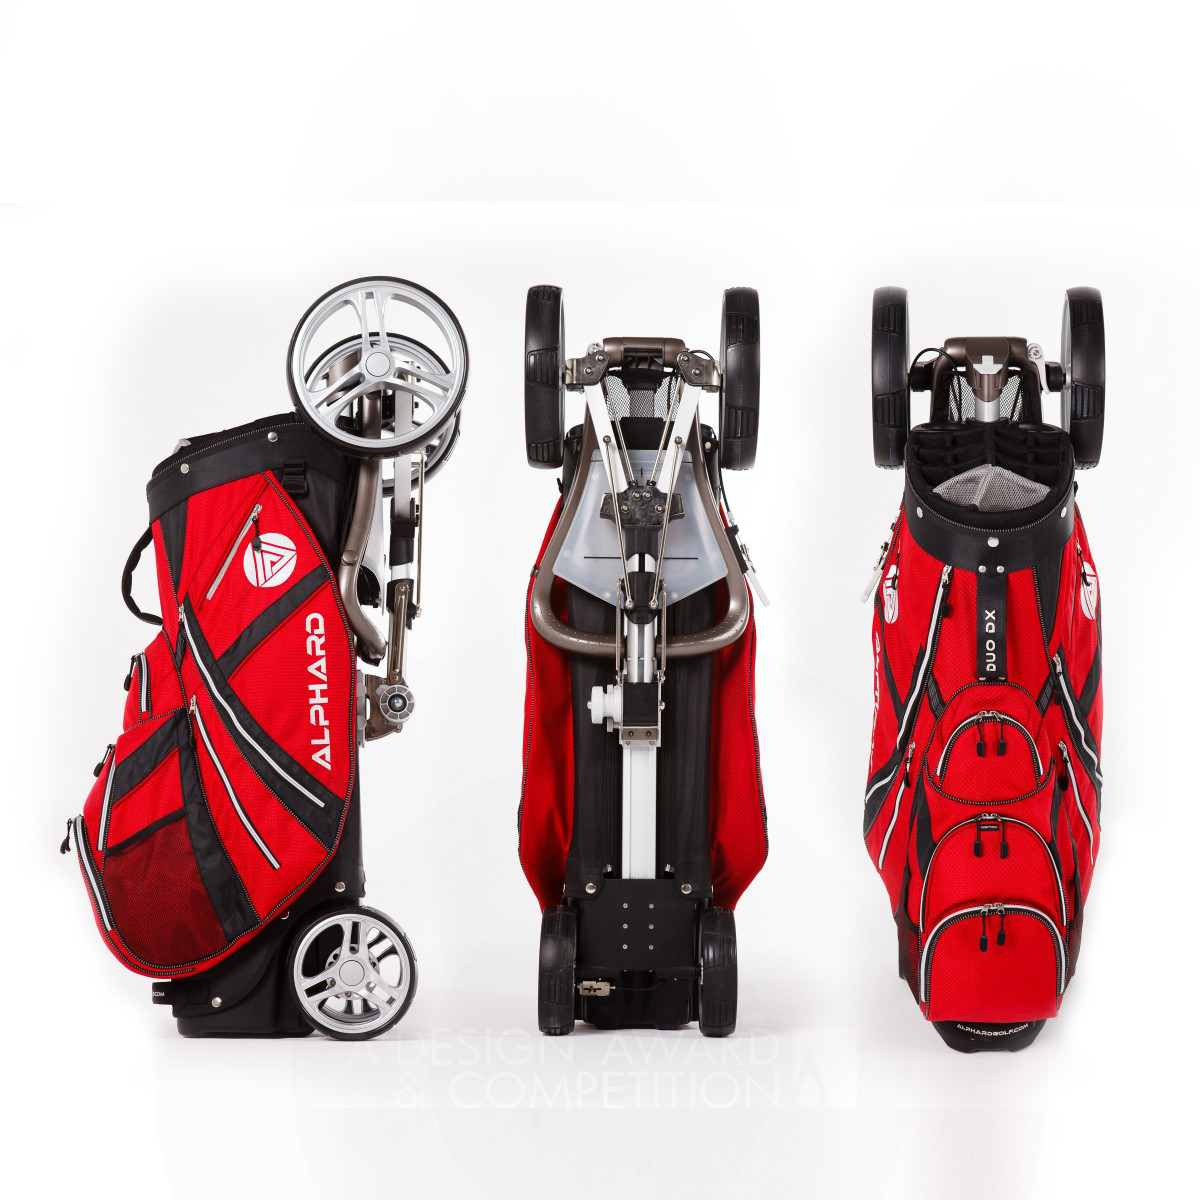 Alphard Duo Golf Cart Golf bag & push cart combination by Alex Tse